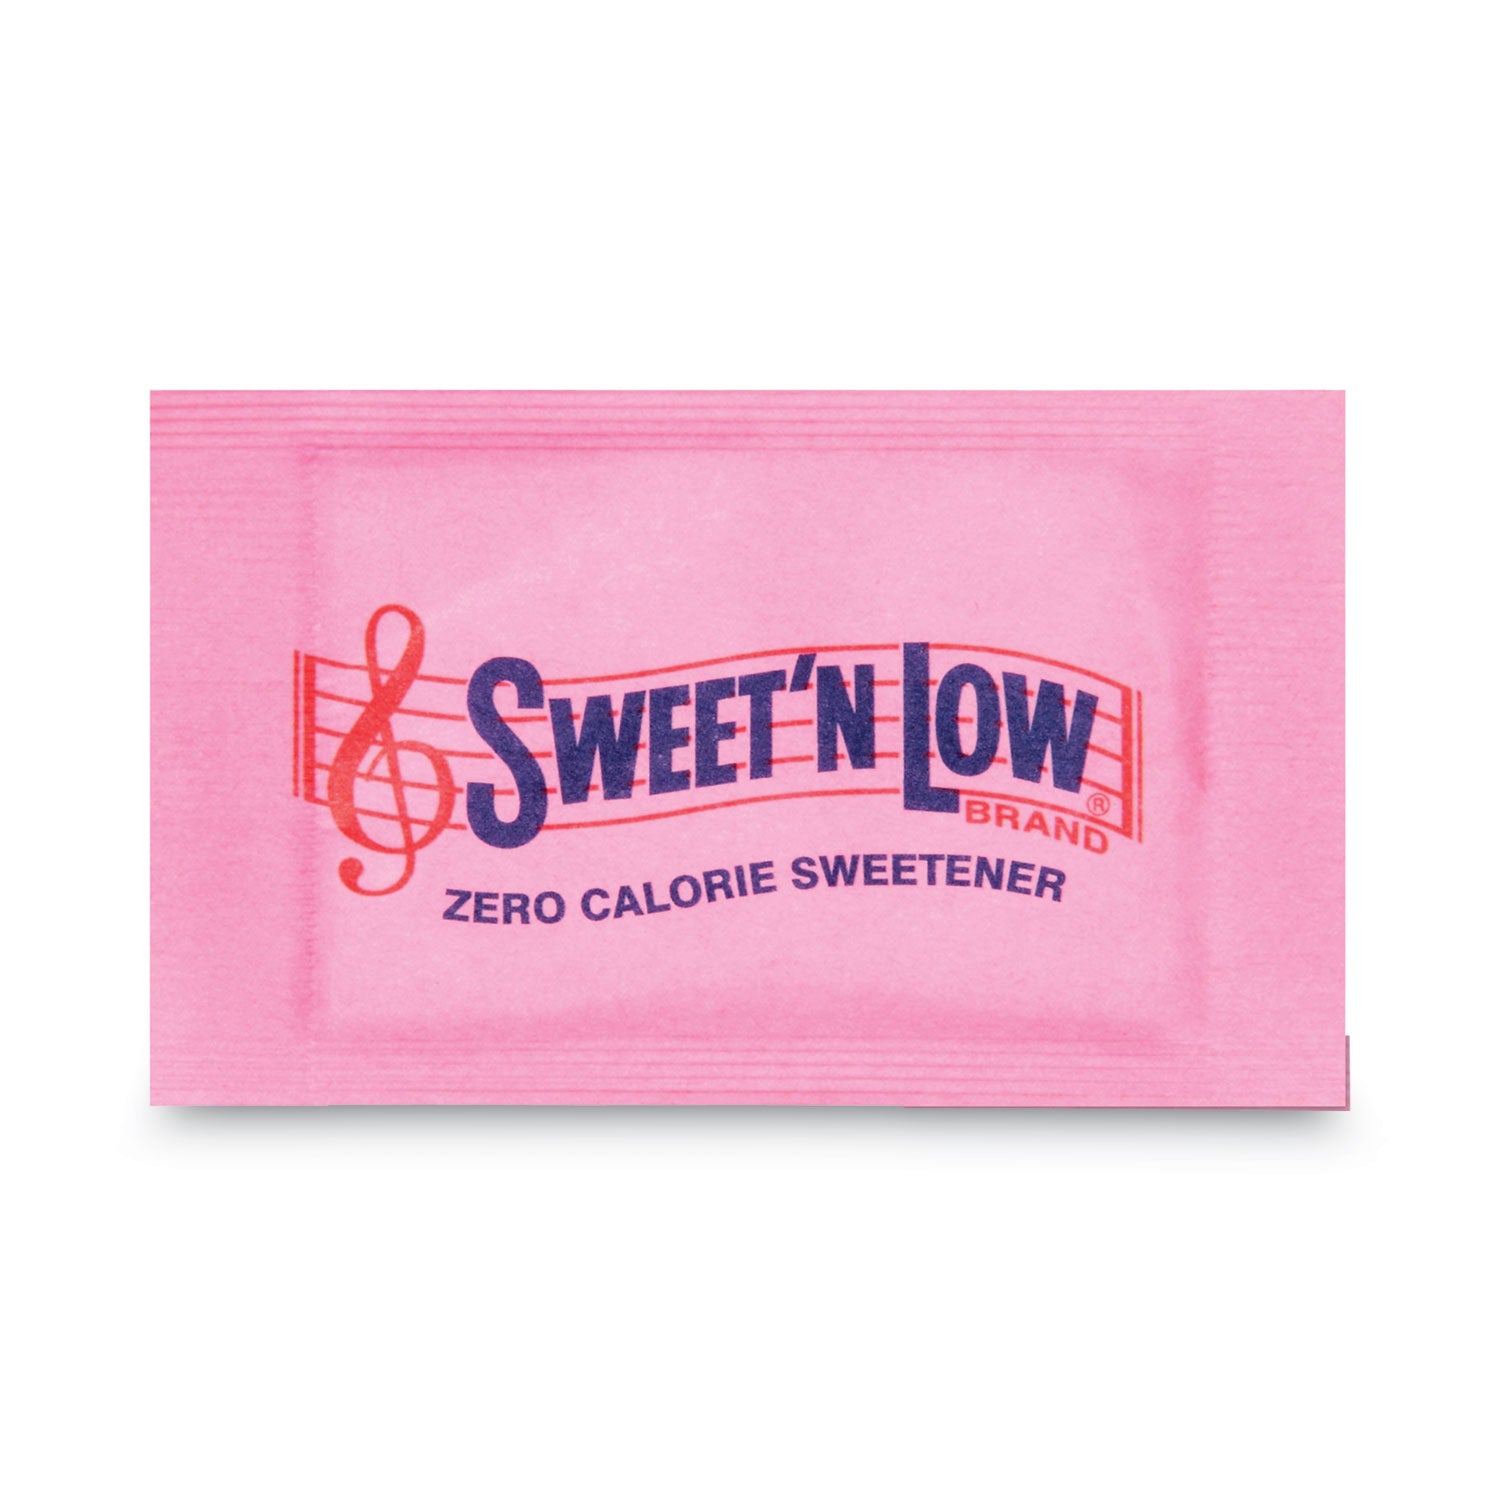 Zero Calorie Sweetener, 1 g Packet, 400 Packet/Box, 4 Box/Carton - 